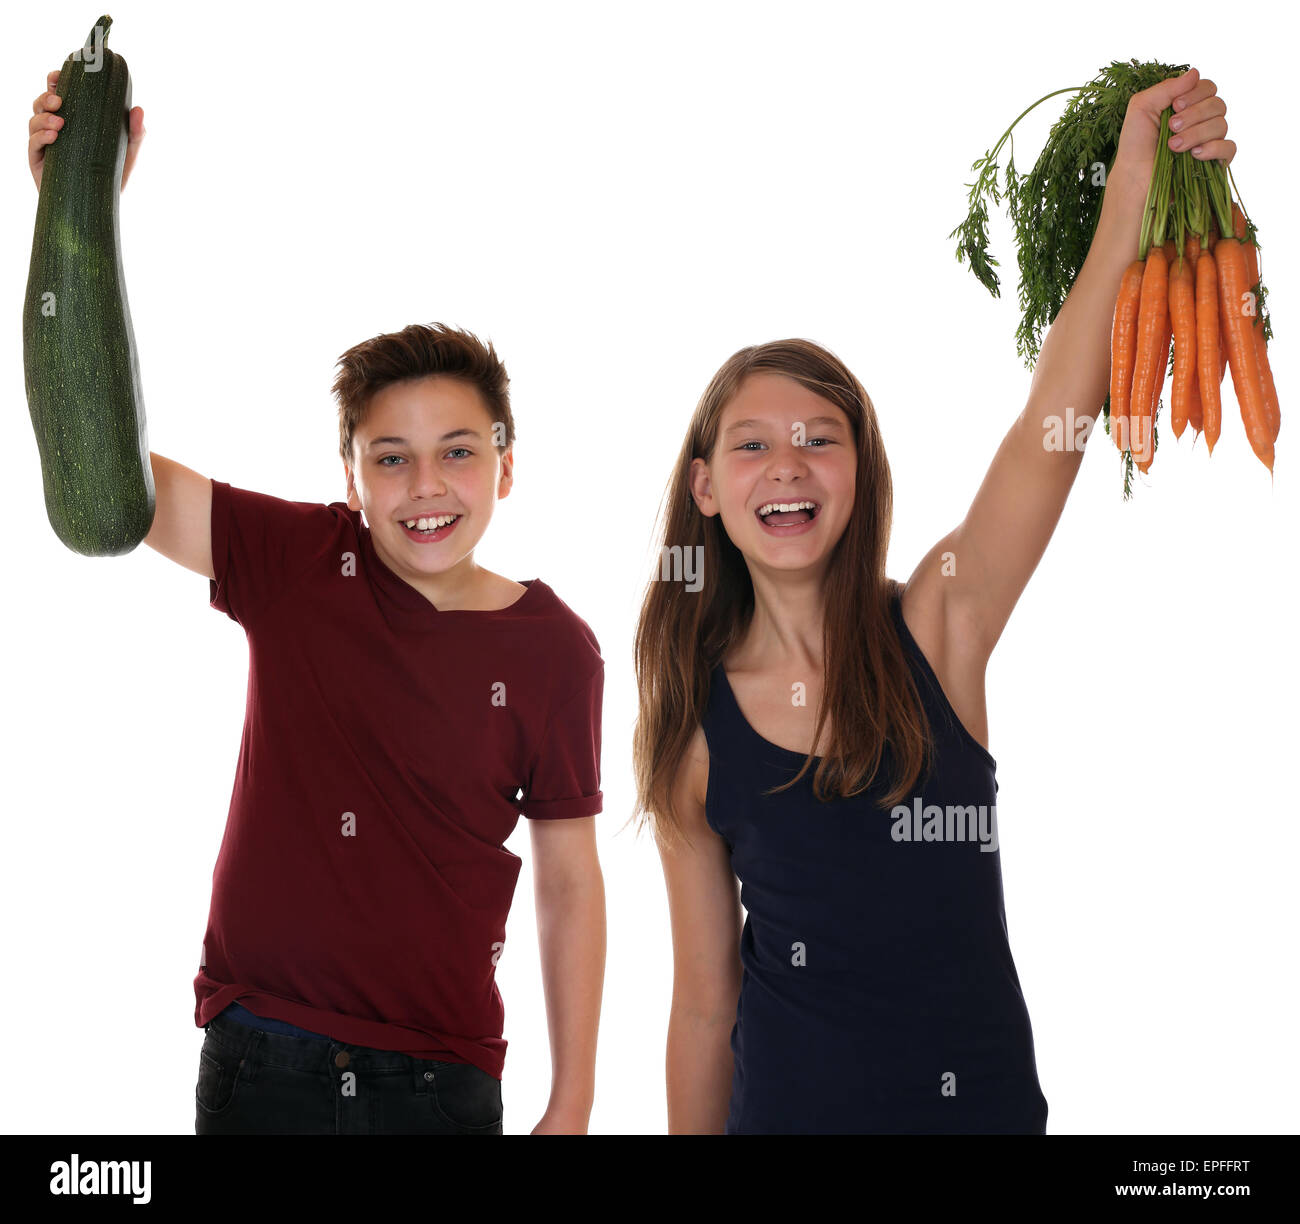 Gesunde Ern├ñhrung lachende Kinder mit Karotten und Zucchini Gem├╝se Stock Photo